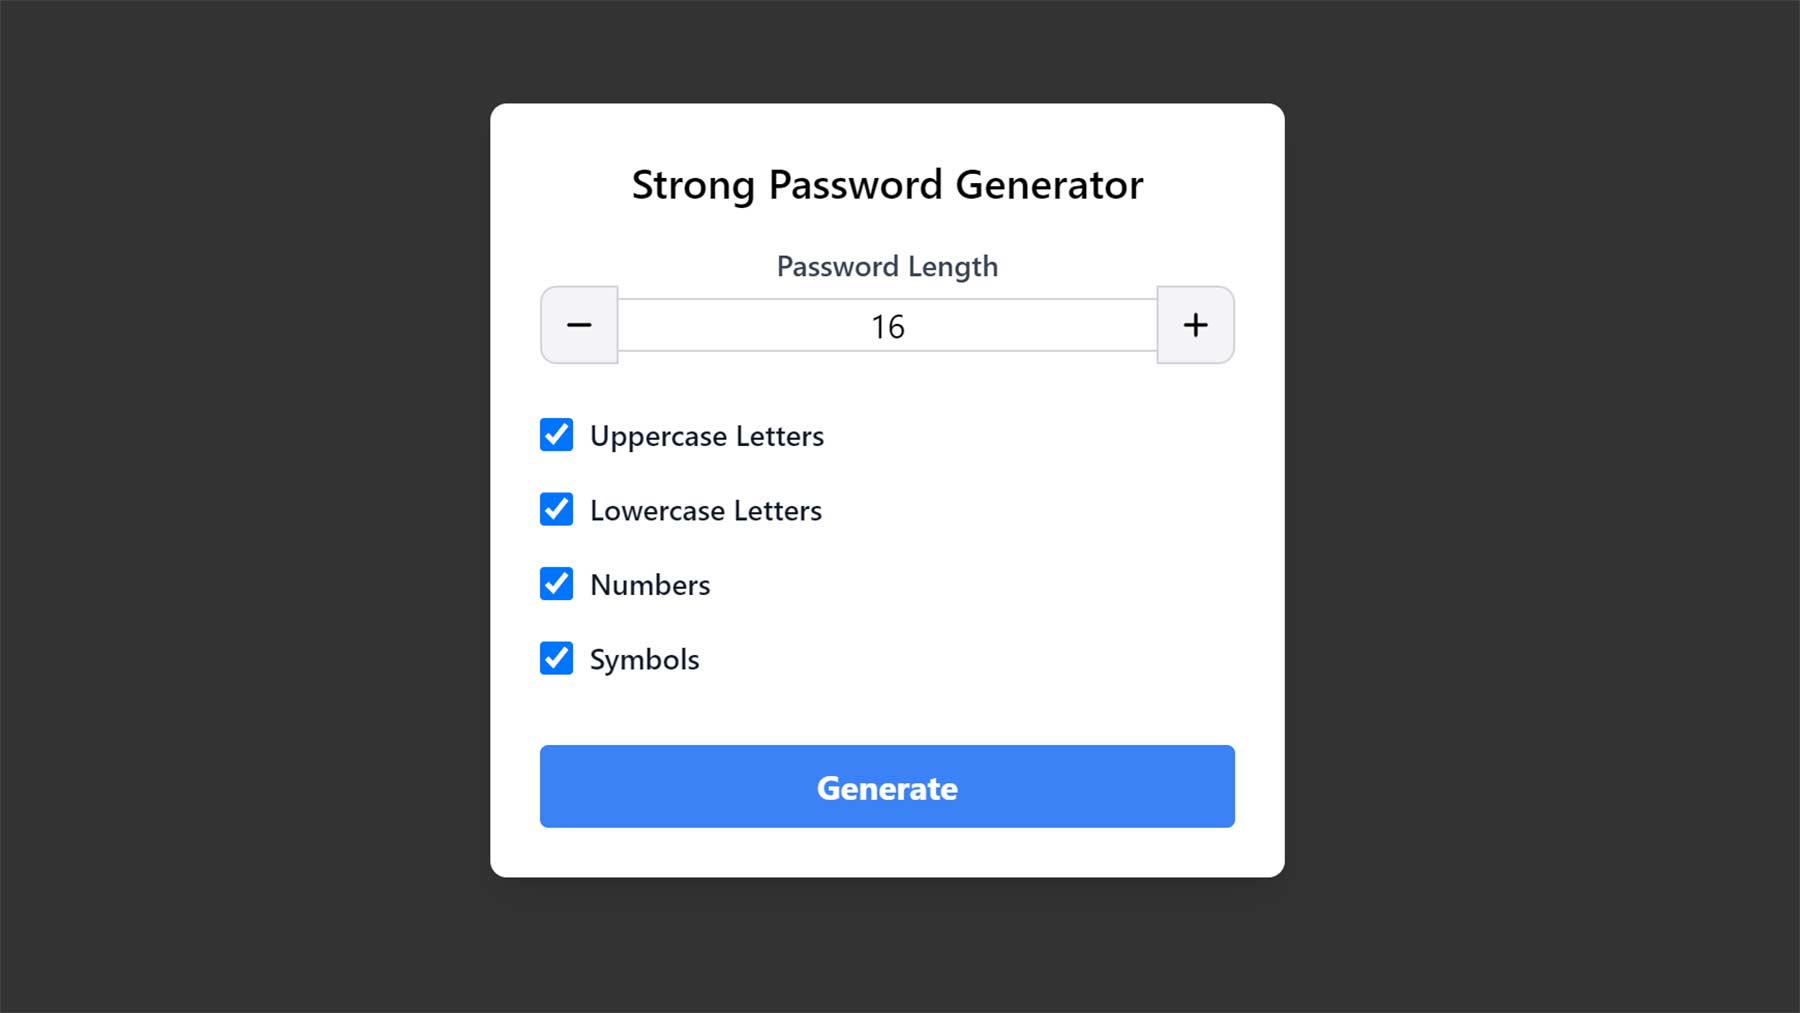 Passwort mit einem Eimer einsammeln: "Password Basket" Password-Basket2 